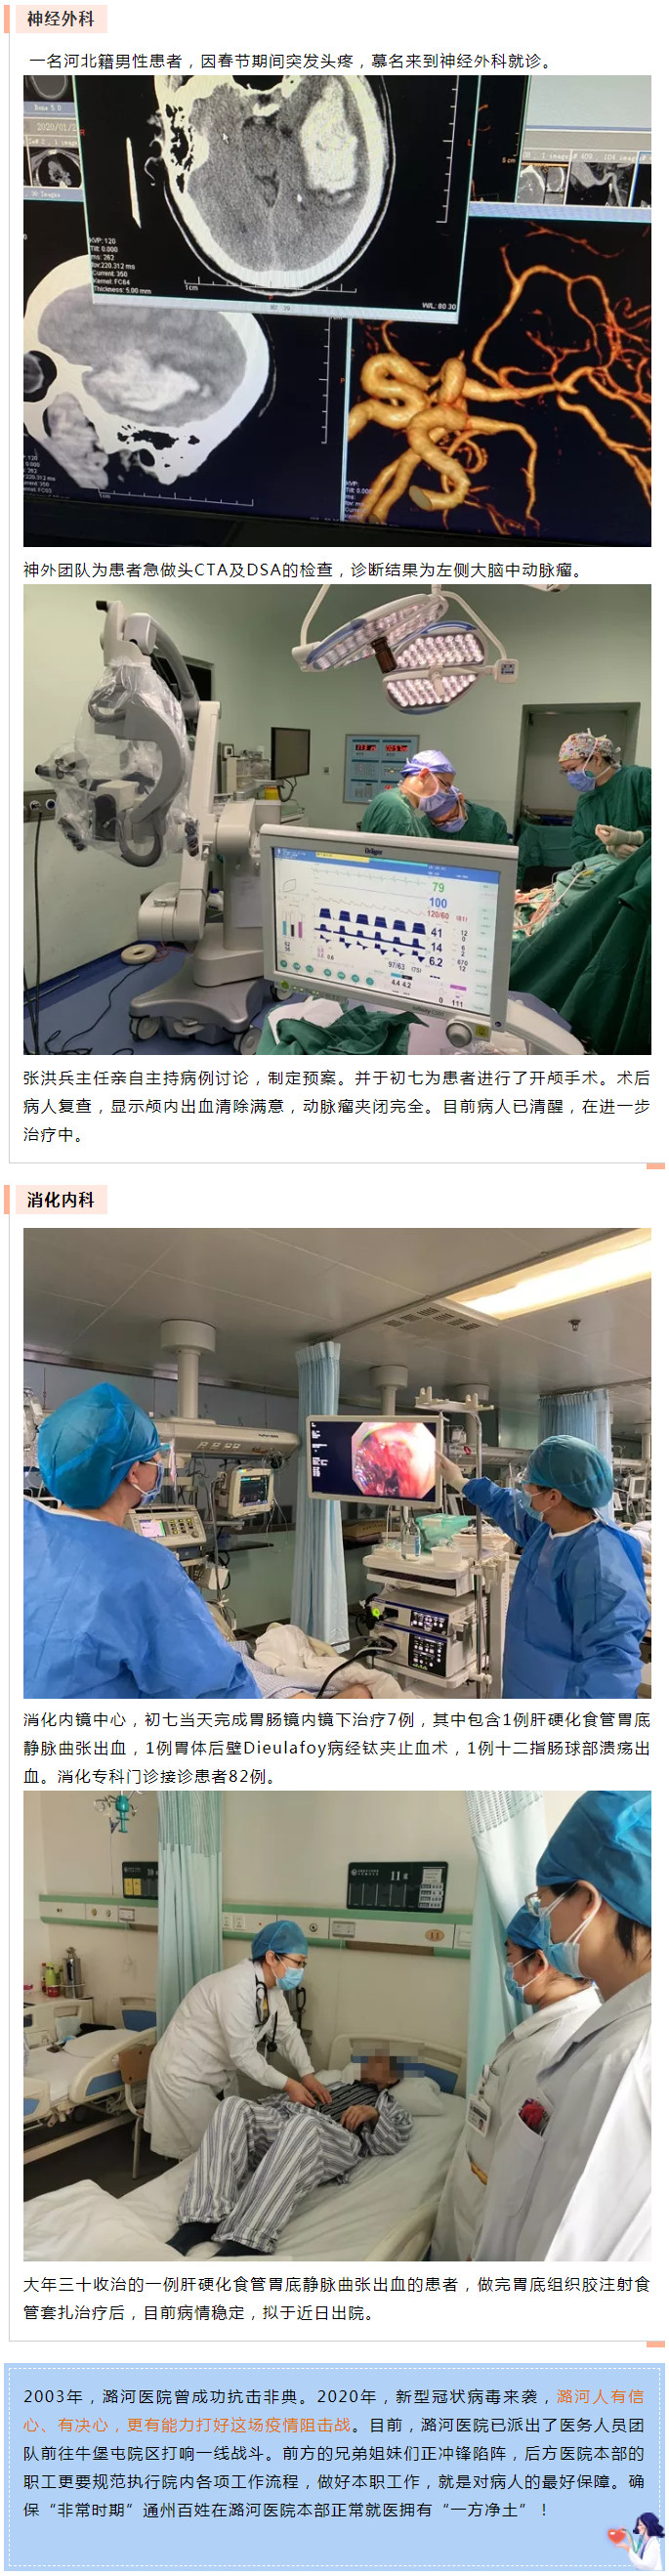 潞河医院基本医疗正常有序平稳进行--2.jpg